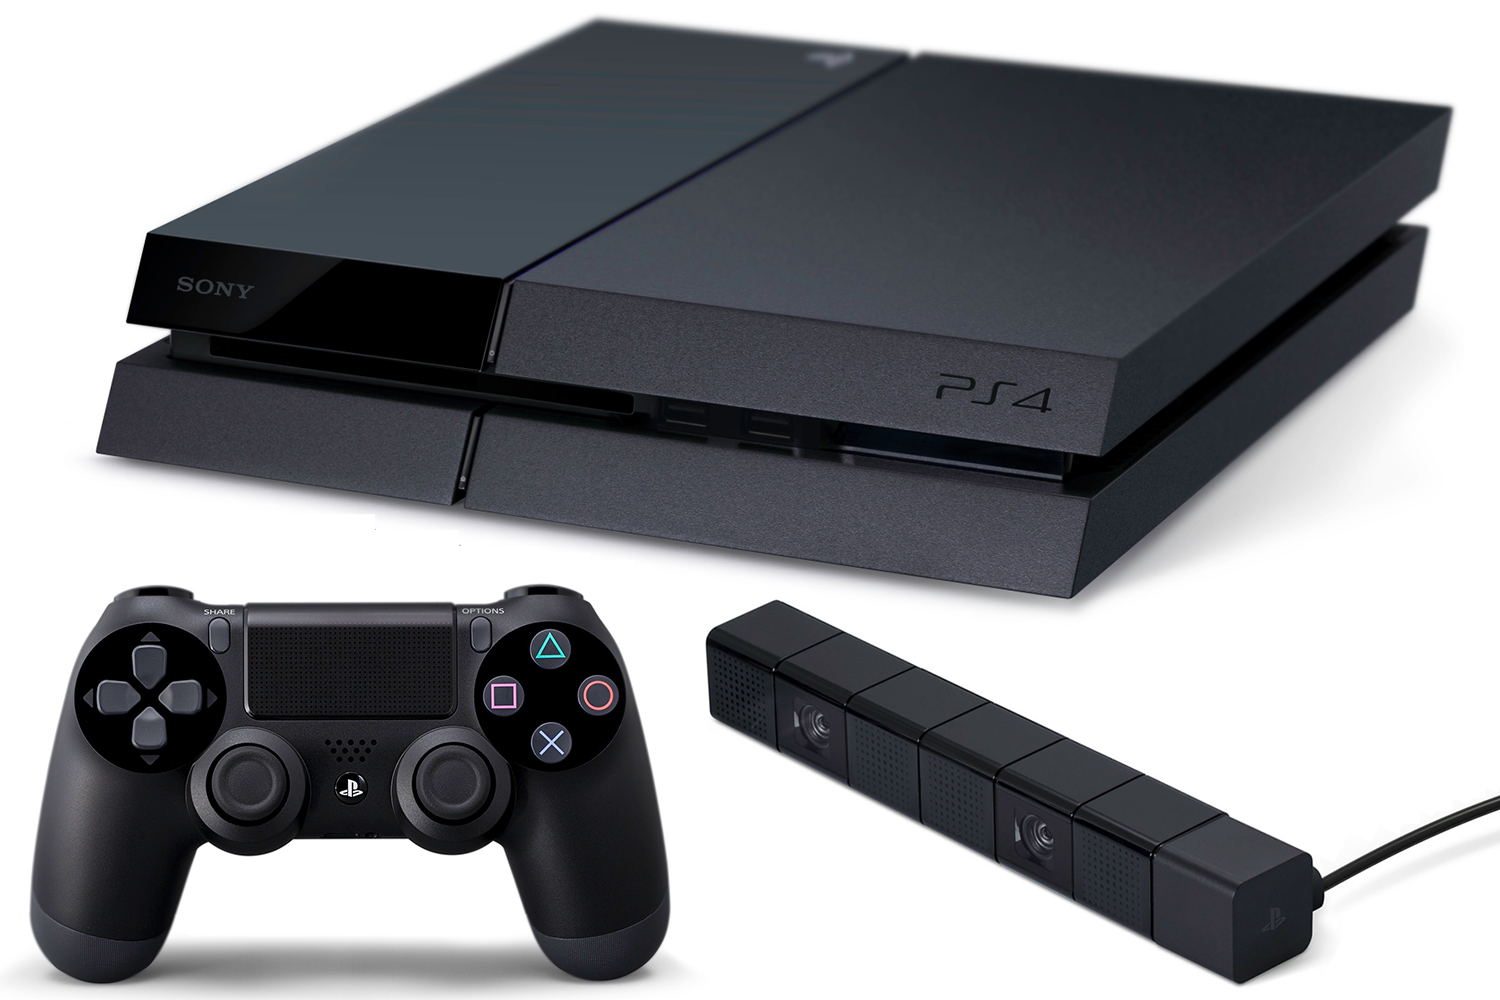 O console “PlayStation 4” recebeu nova atualização com várias novidades